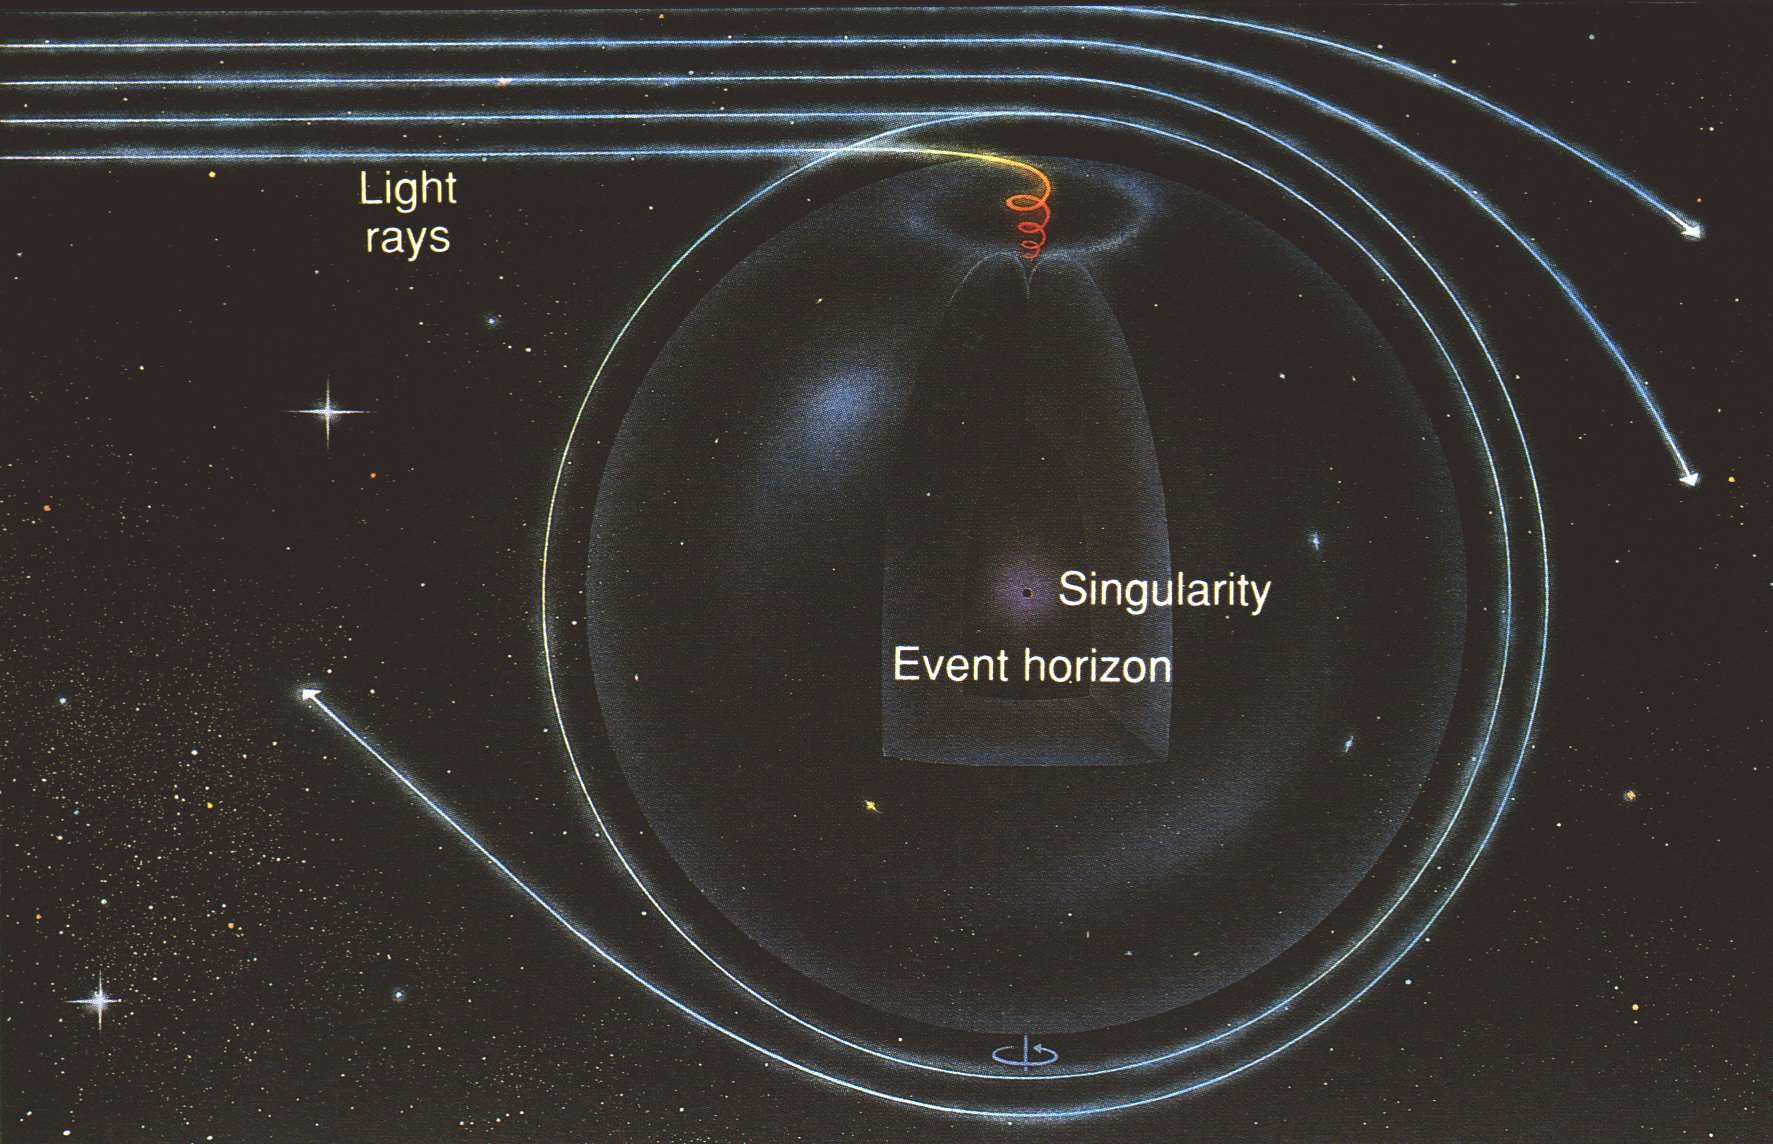 ΦΩΤΟΝΙΑ ΚΟΝΤΑ ΣΕ Μ.Ο. Εικόνα 19: Τροχιές φωτονίων για διέλευση κοντά σε μελανή οπή.